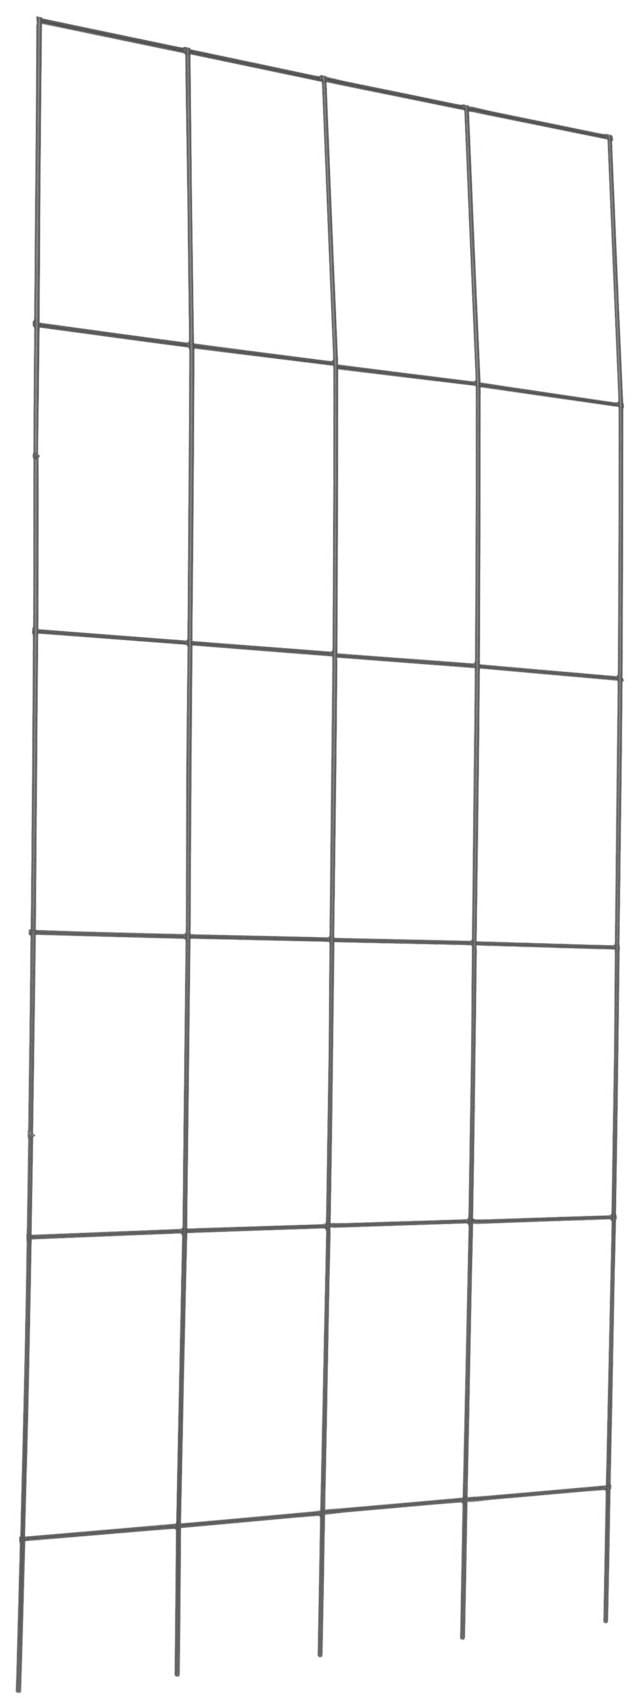 Spalier, Gitterspalier aus Metall, rostfrei, H: 150 cm